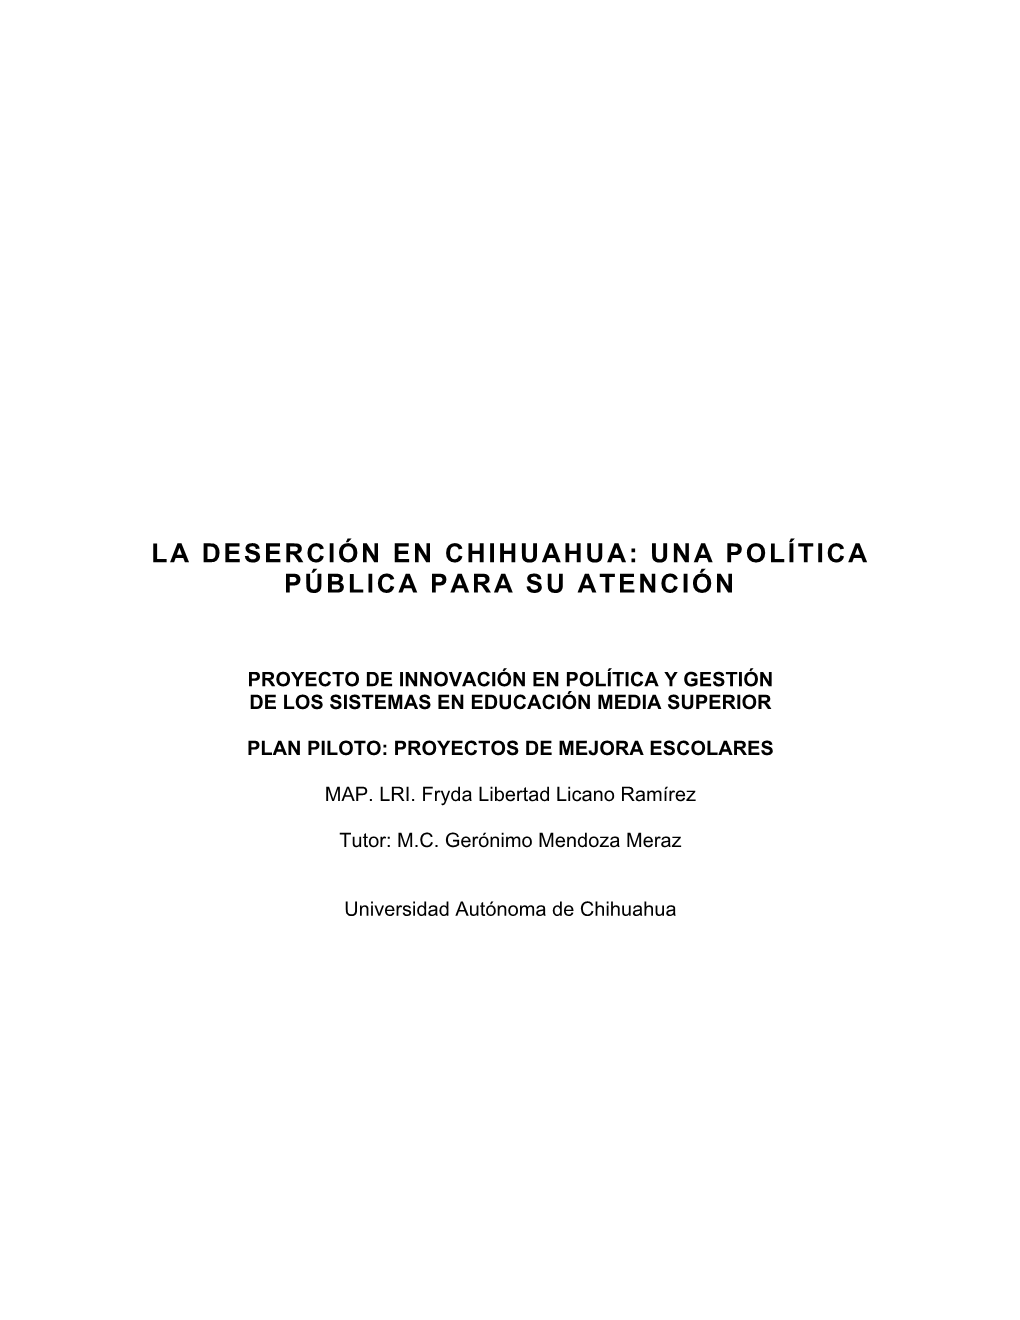 La Deserción En Chihuahua: Una Política Pública Para Su Atención